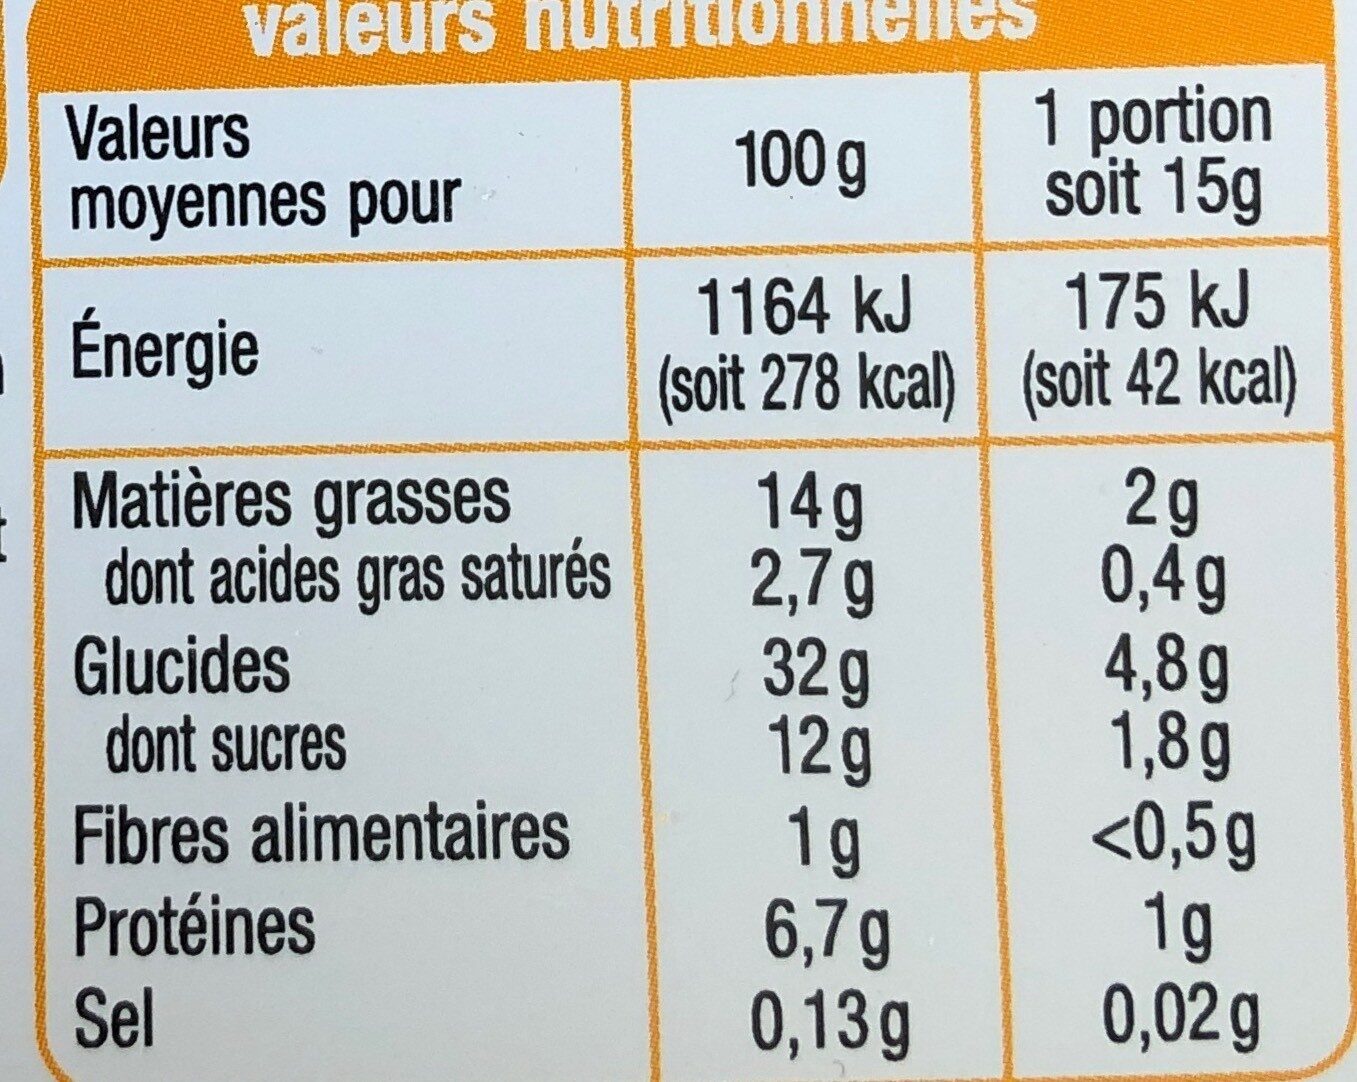 Les desserts - Crêpes moelleuses à la vanille - Nutrition facts - fr